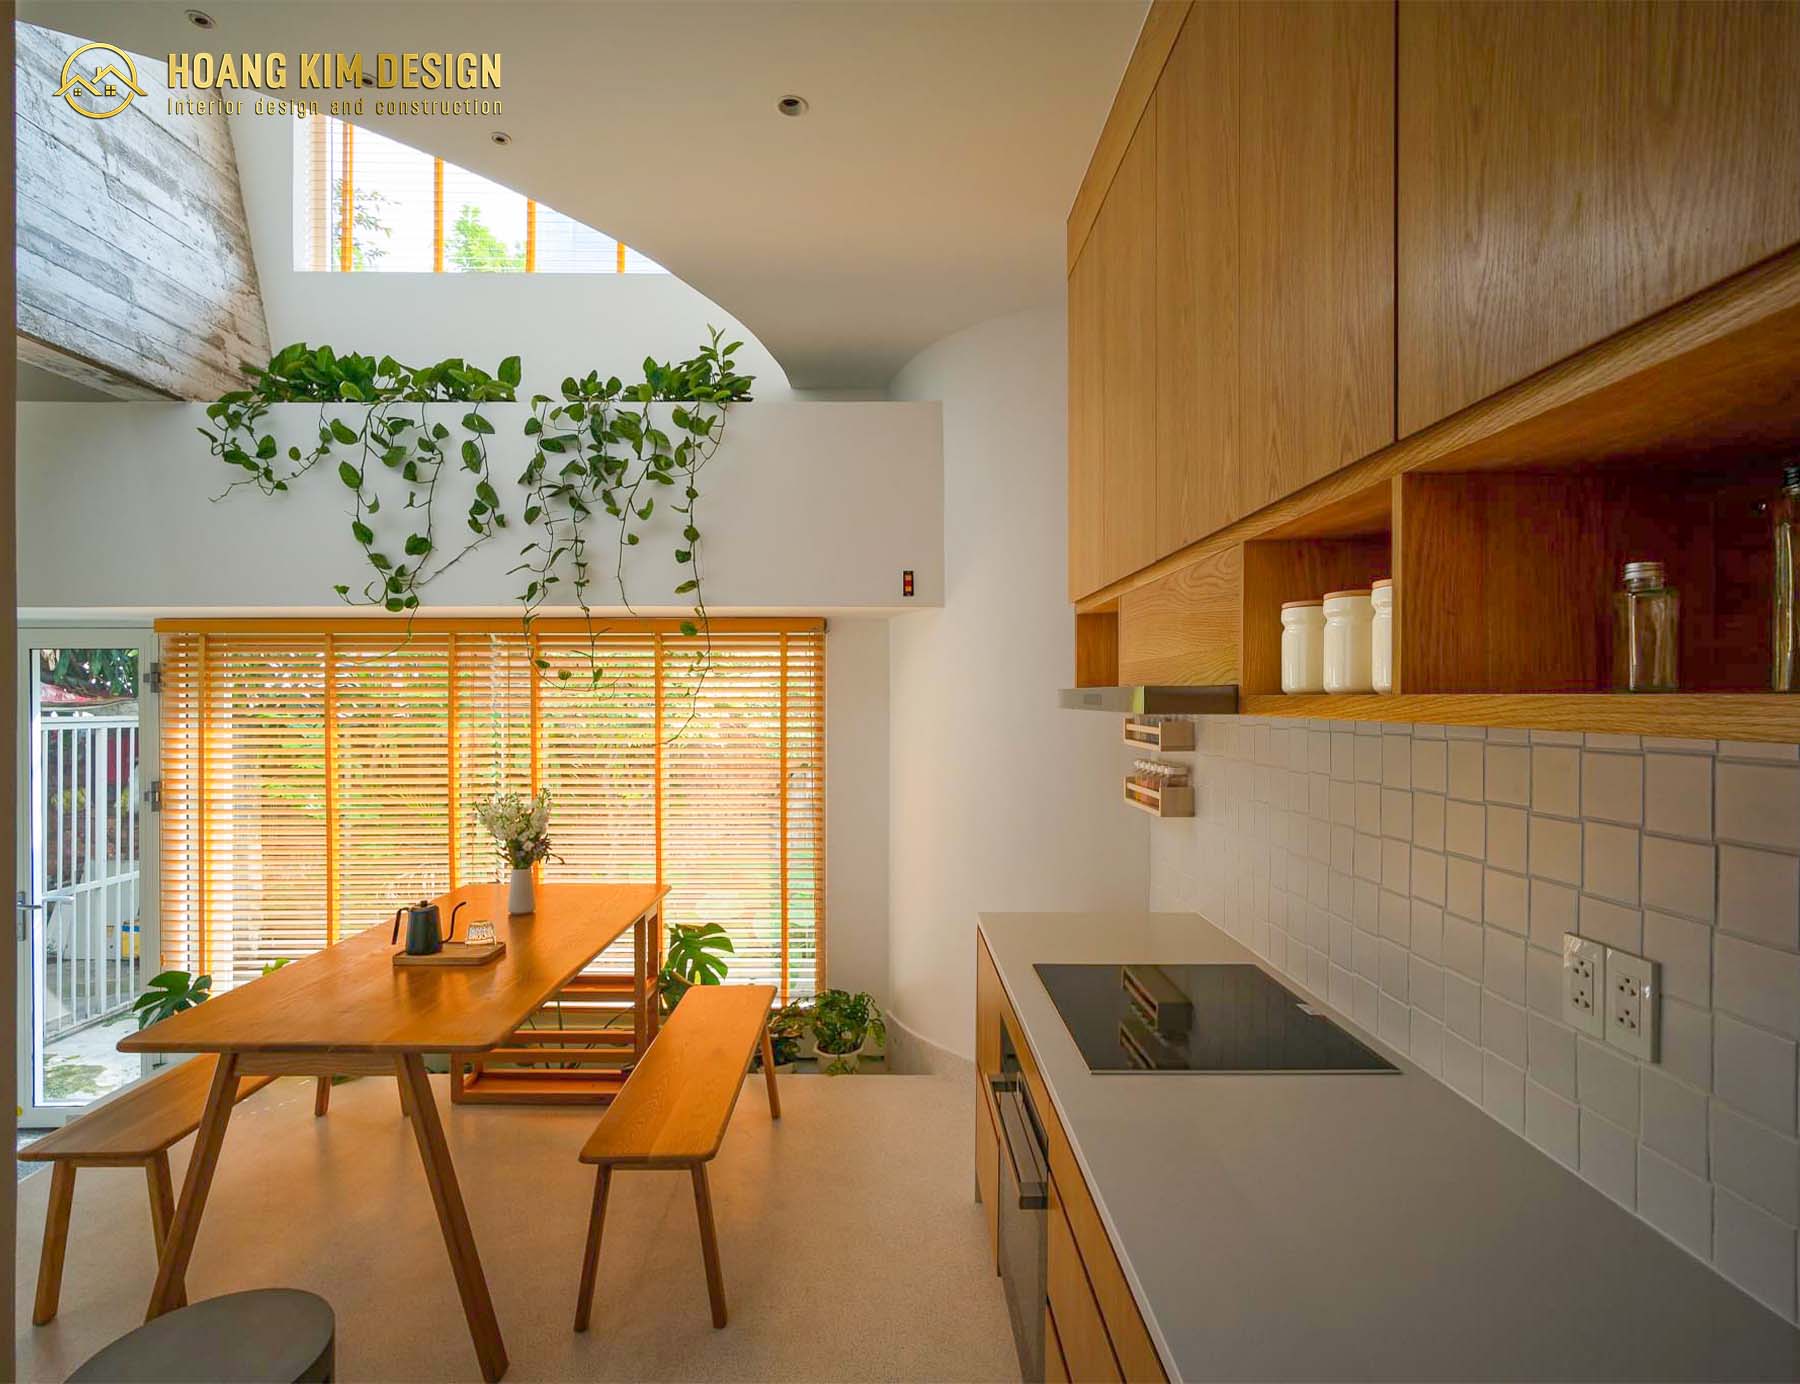 Dọc phần tường cạnh bàn ăn được bố trí nhiều cây xanh nhằm cân bằng độ ẩm và khử mùi cho căn bếp.